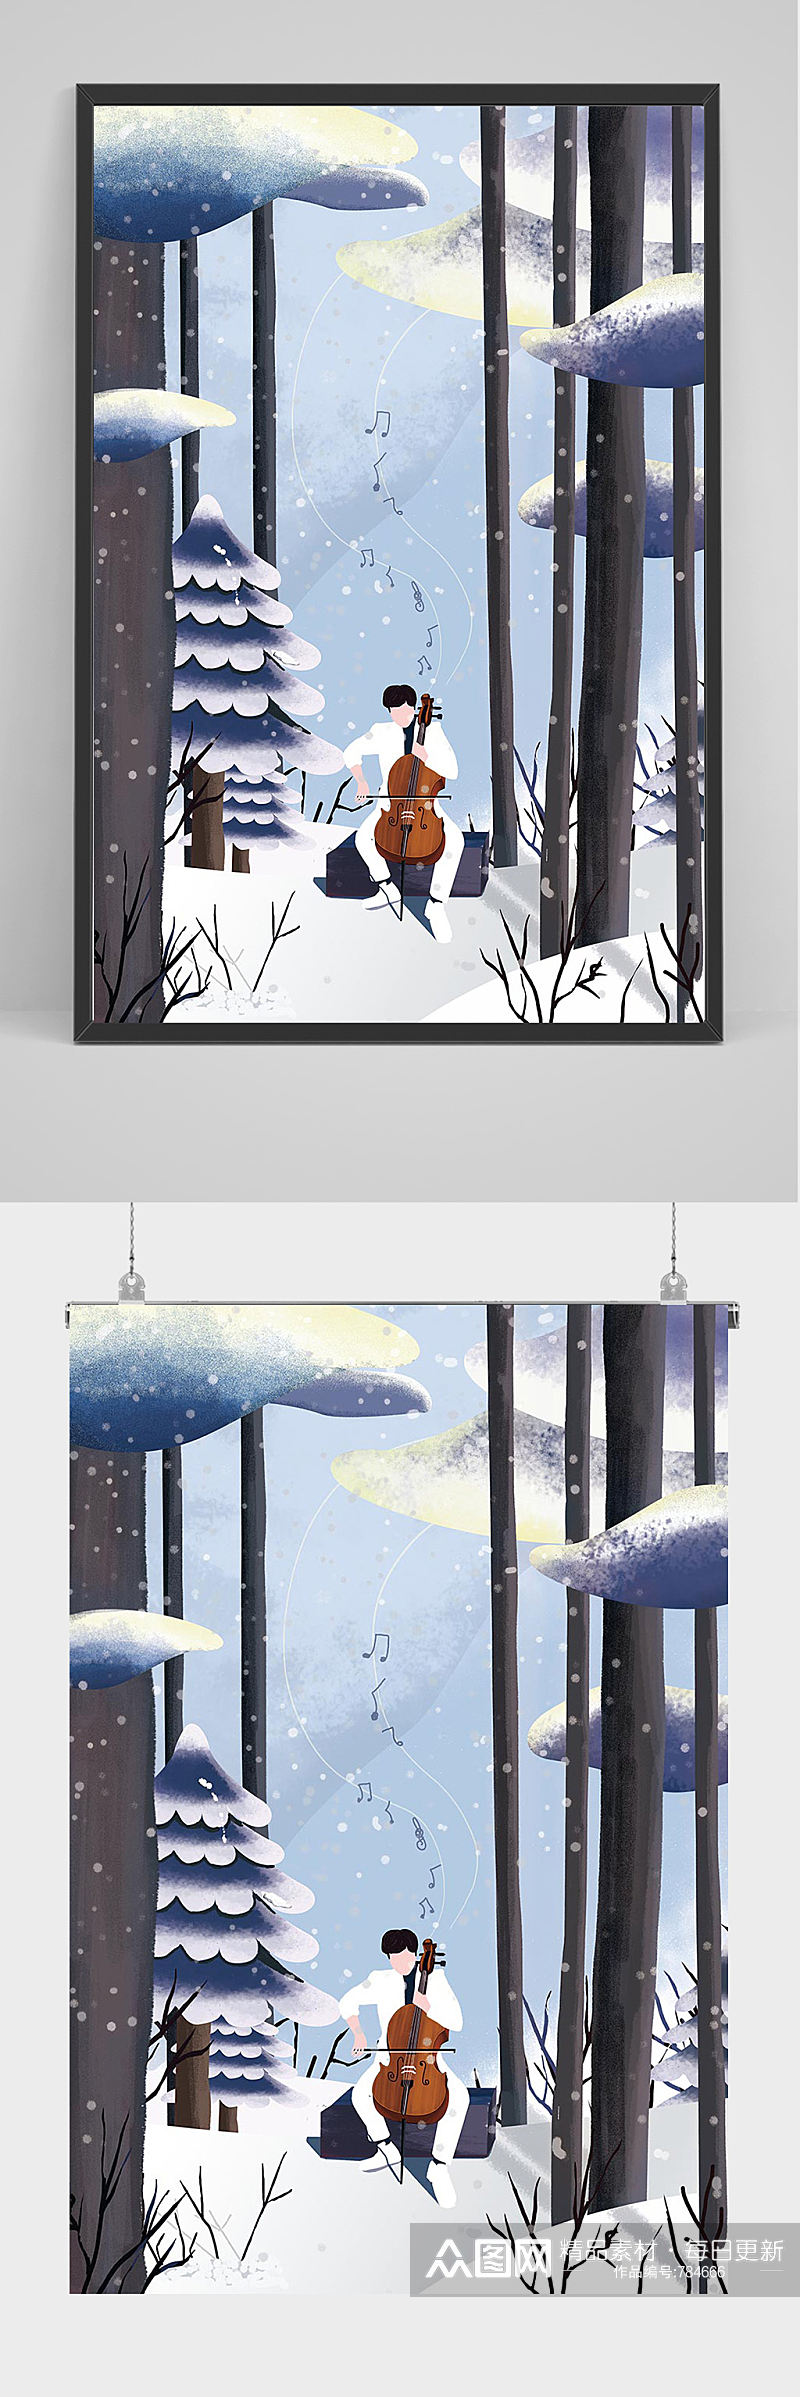 冬季树林中拉大提琴的男子插画设计素材